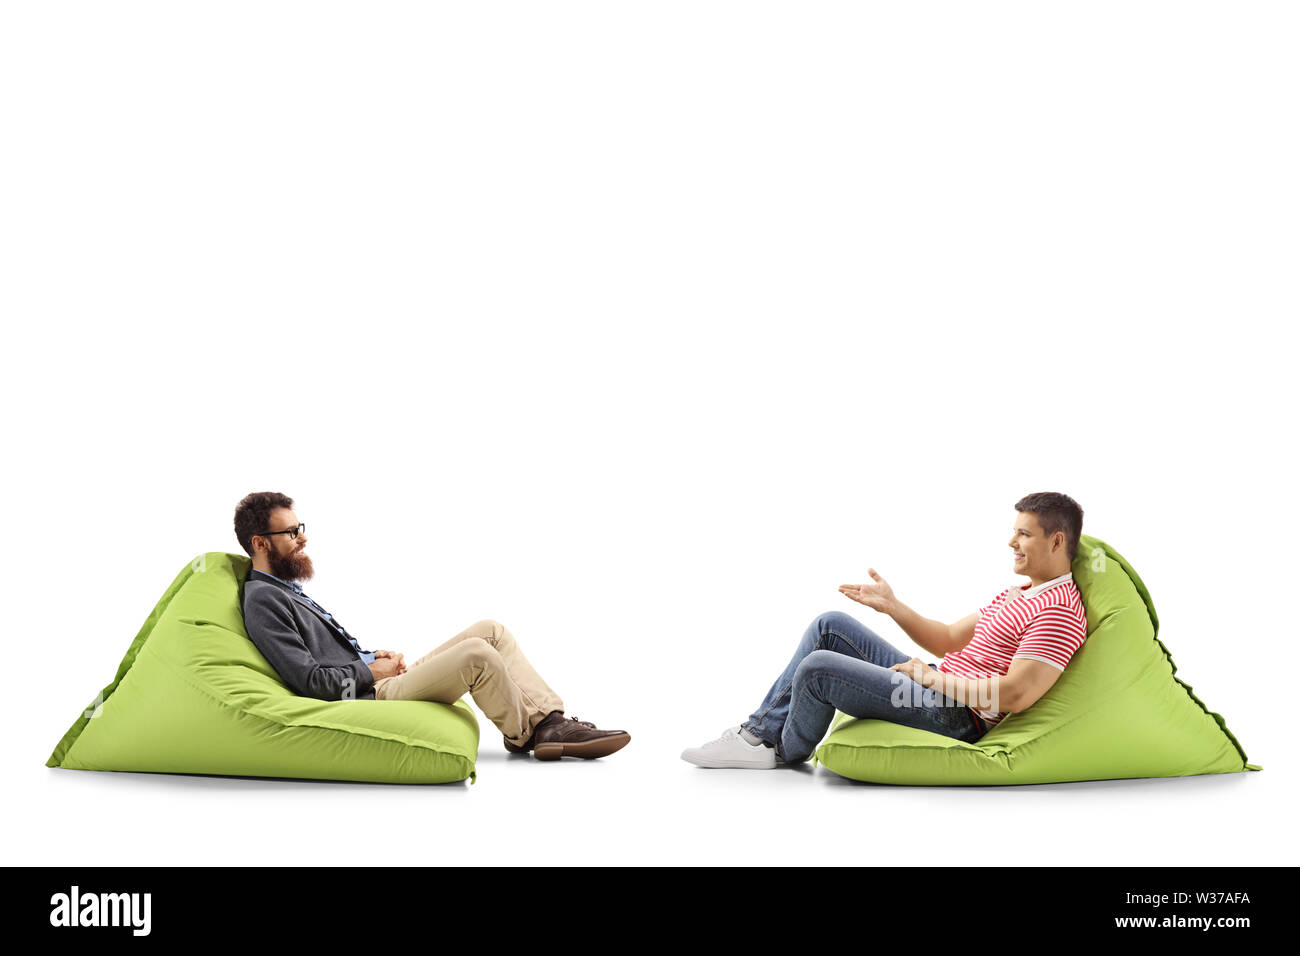 Volle Länge Profil Schuß von zwei Männer auf sitzsäcken ein Gespräch auf weißem Hintergrund Stockfoto